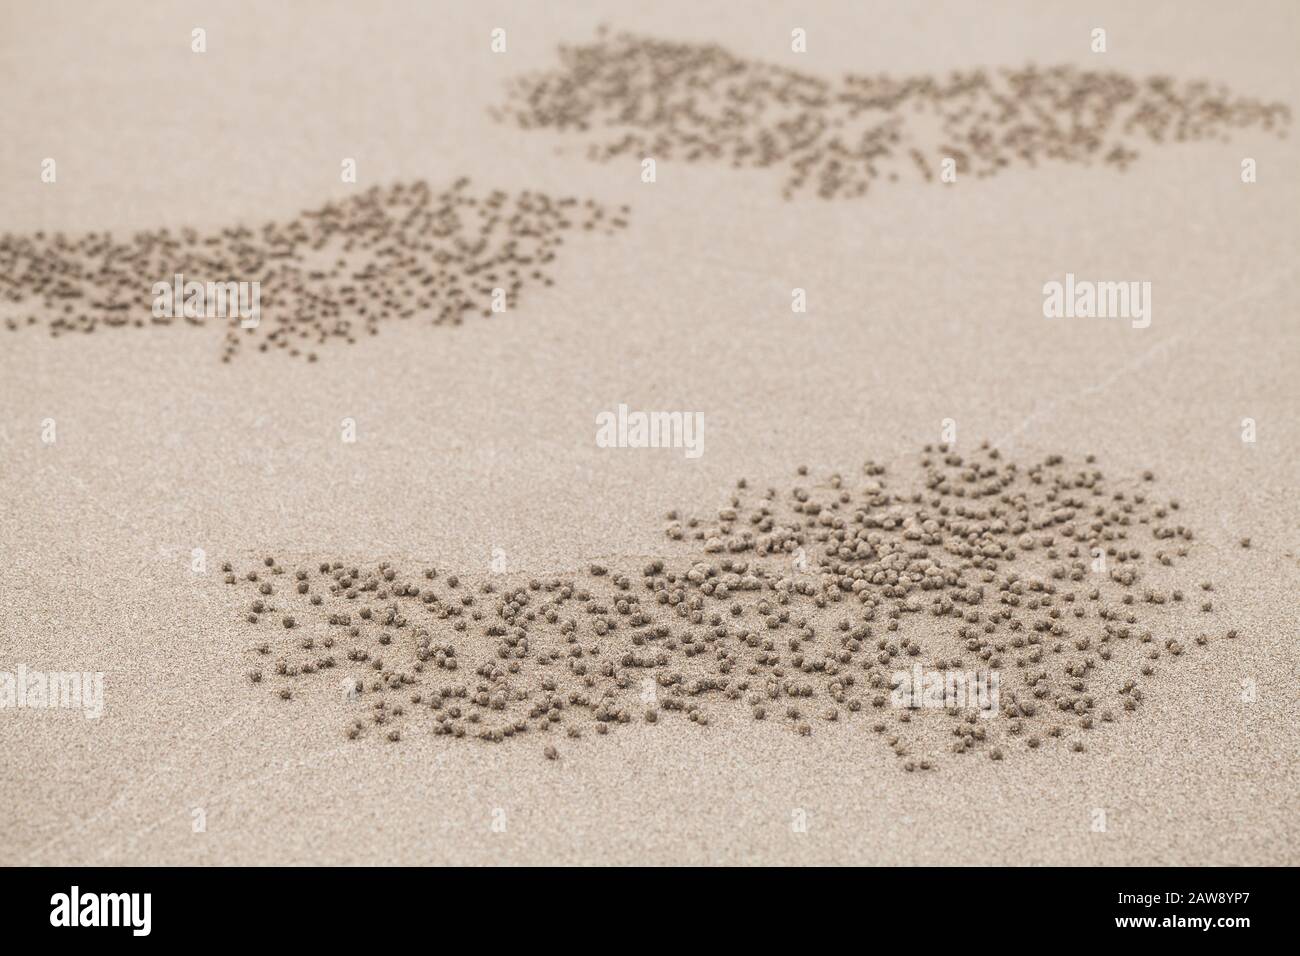 Motifs de petites boules de sable faites par des crabes de bubbler de sable, photo de fond naturelle abstraite Banque D'Images